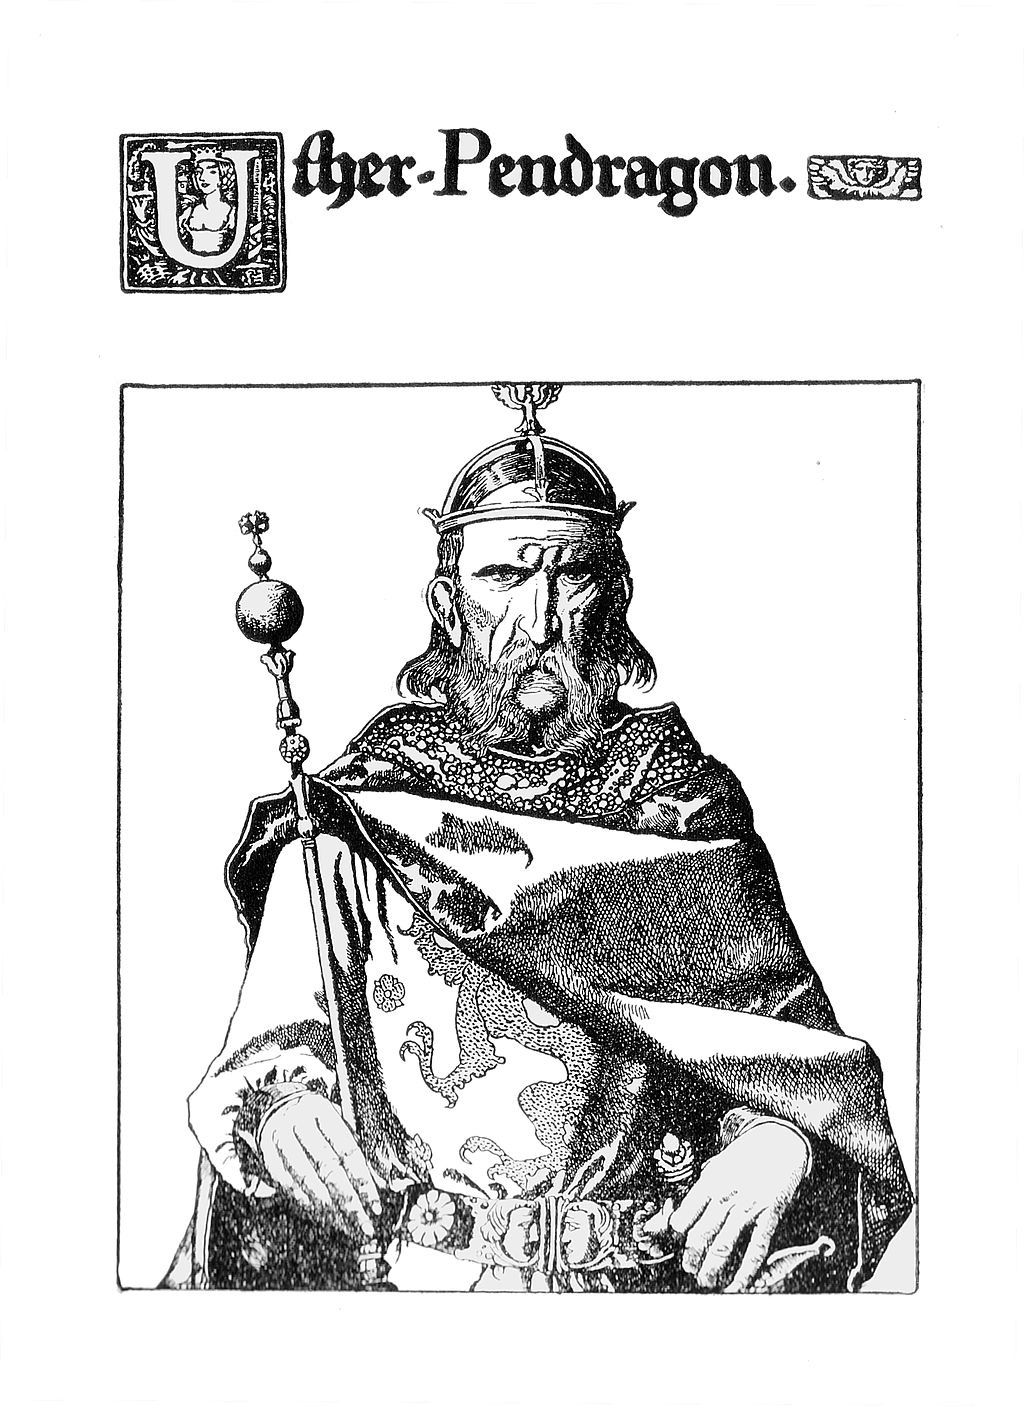 Uther Pendragon: rei e pai do rei Artur nas lendas arturianas. Uther Pendragon foi um rei da Bretanha que lutou contra os saxões e o pai do rei Artur.Este desenho é uma ilustração de Howard Pyle (1903)